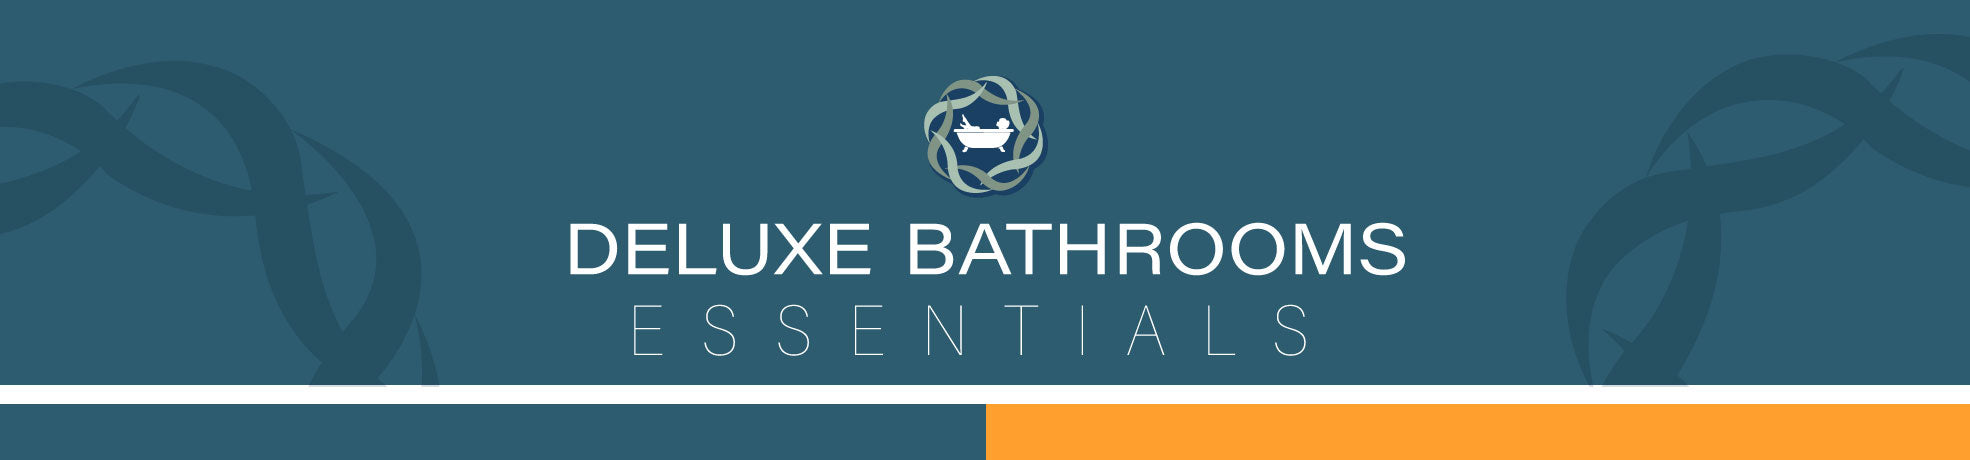 Deluxe Bathrooms Essentials